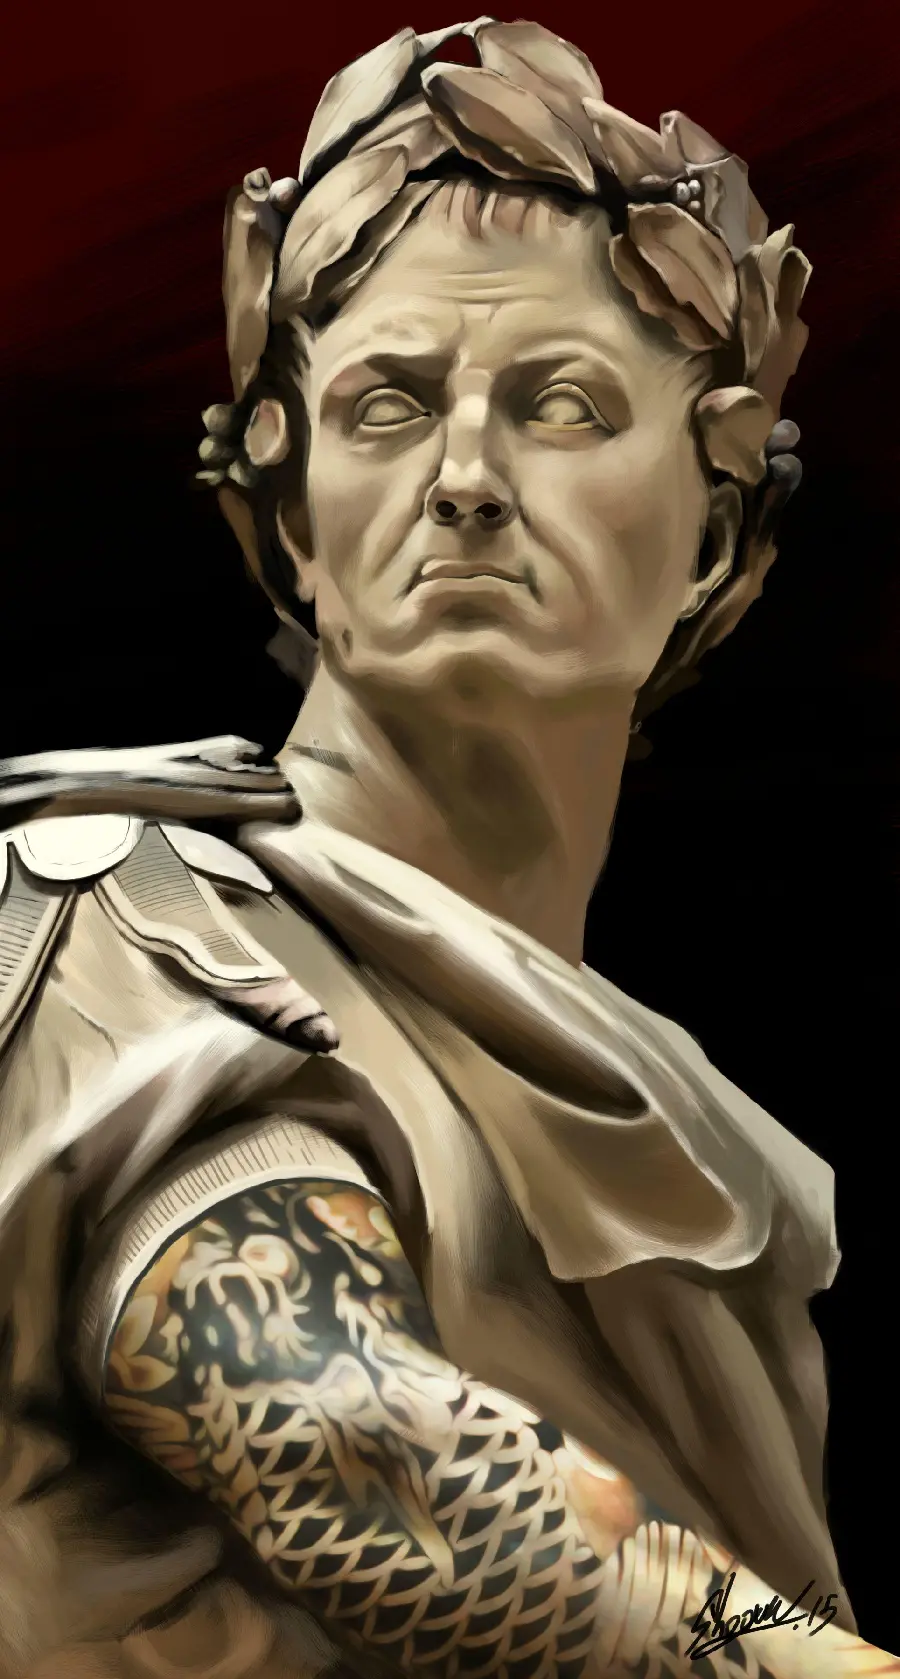 نقاشی صورت ژولیوس سزار به شکل مجسمه